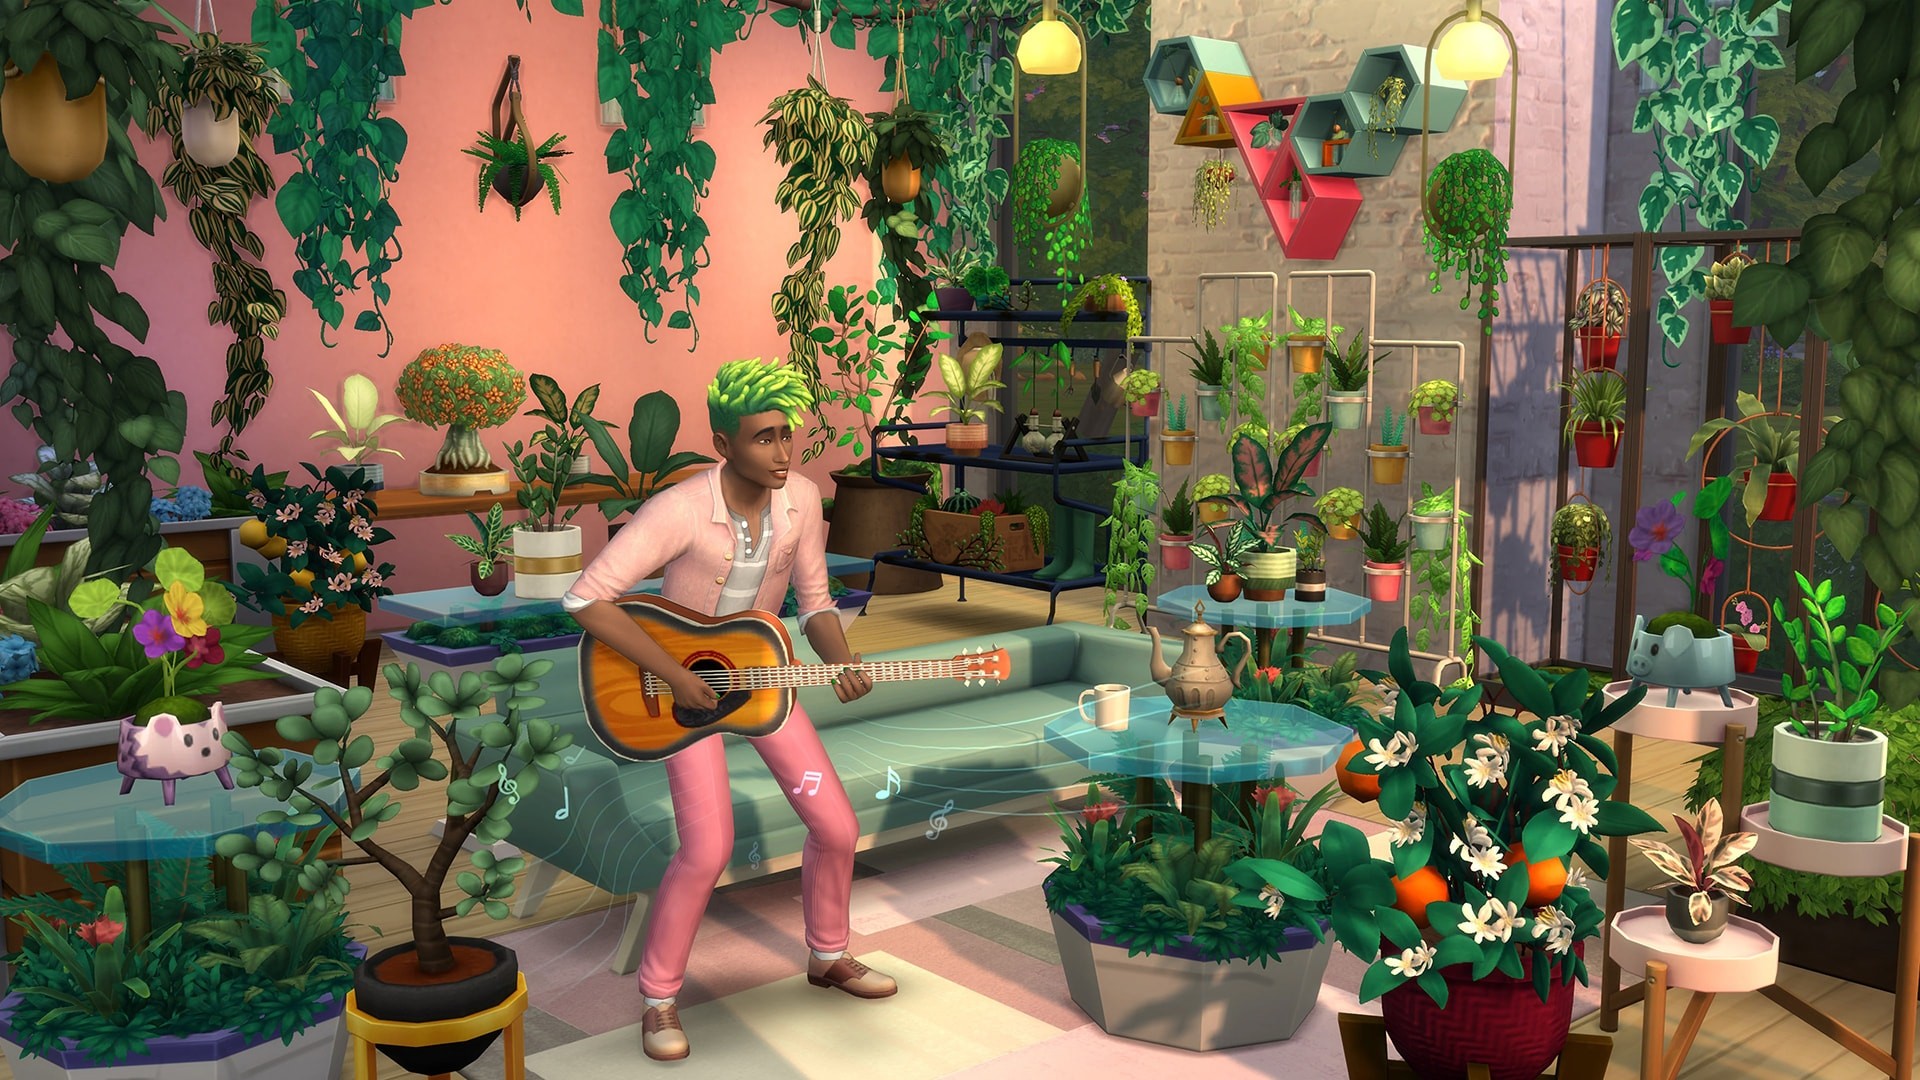 The Sims 4 - Blooming Rooms Kit DLC Origin CD Key